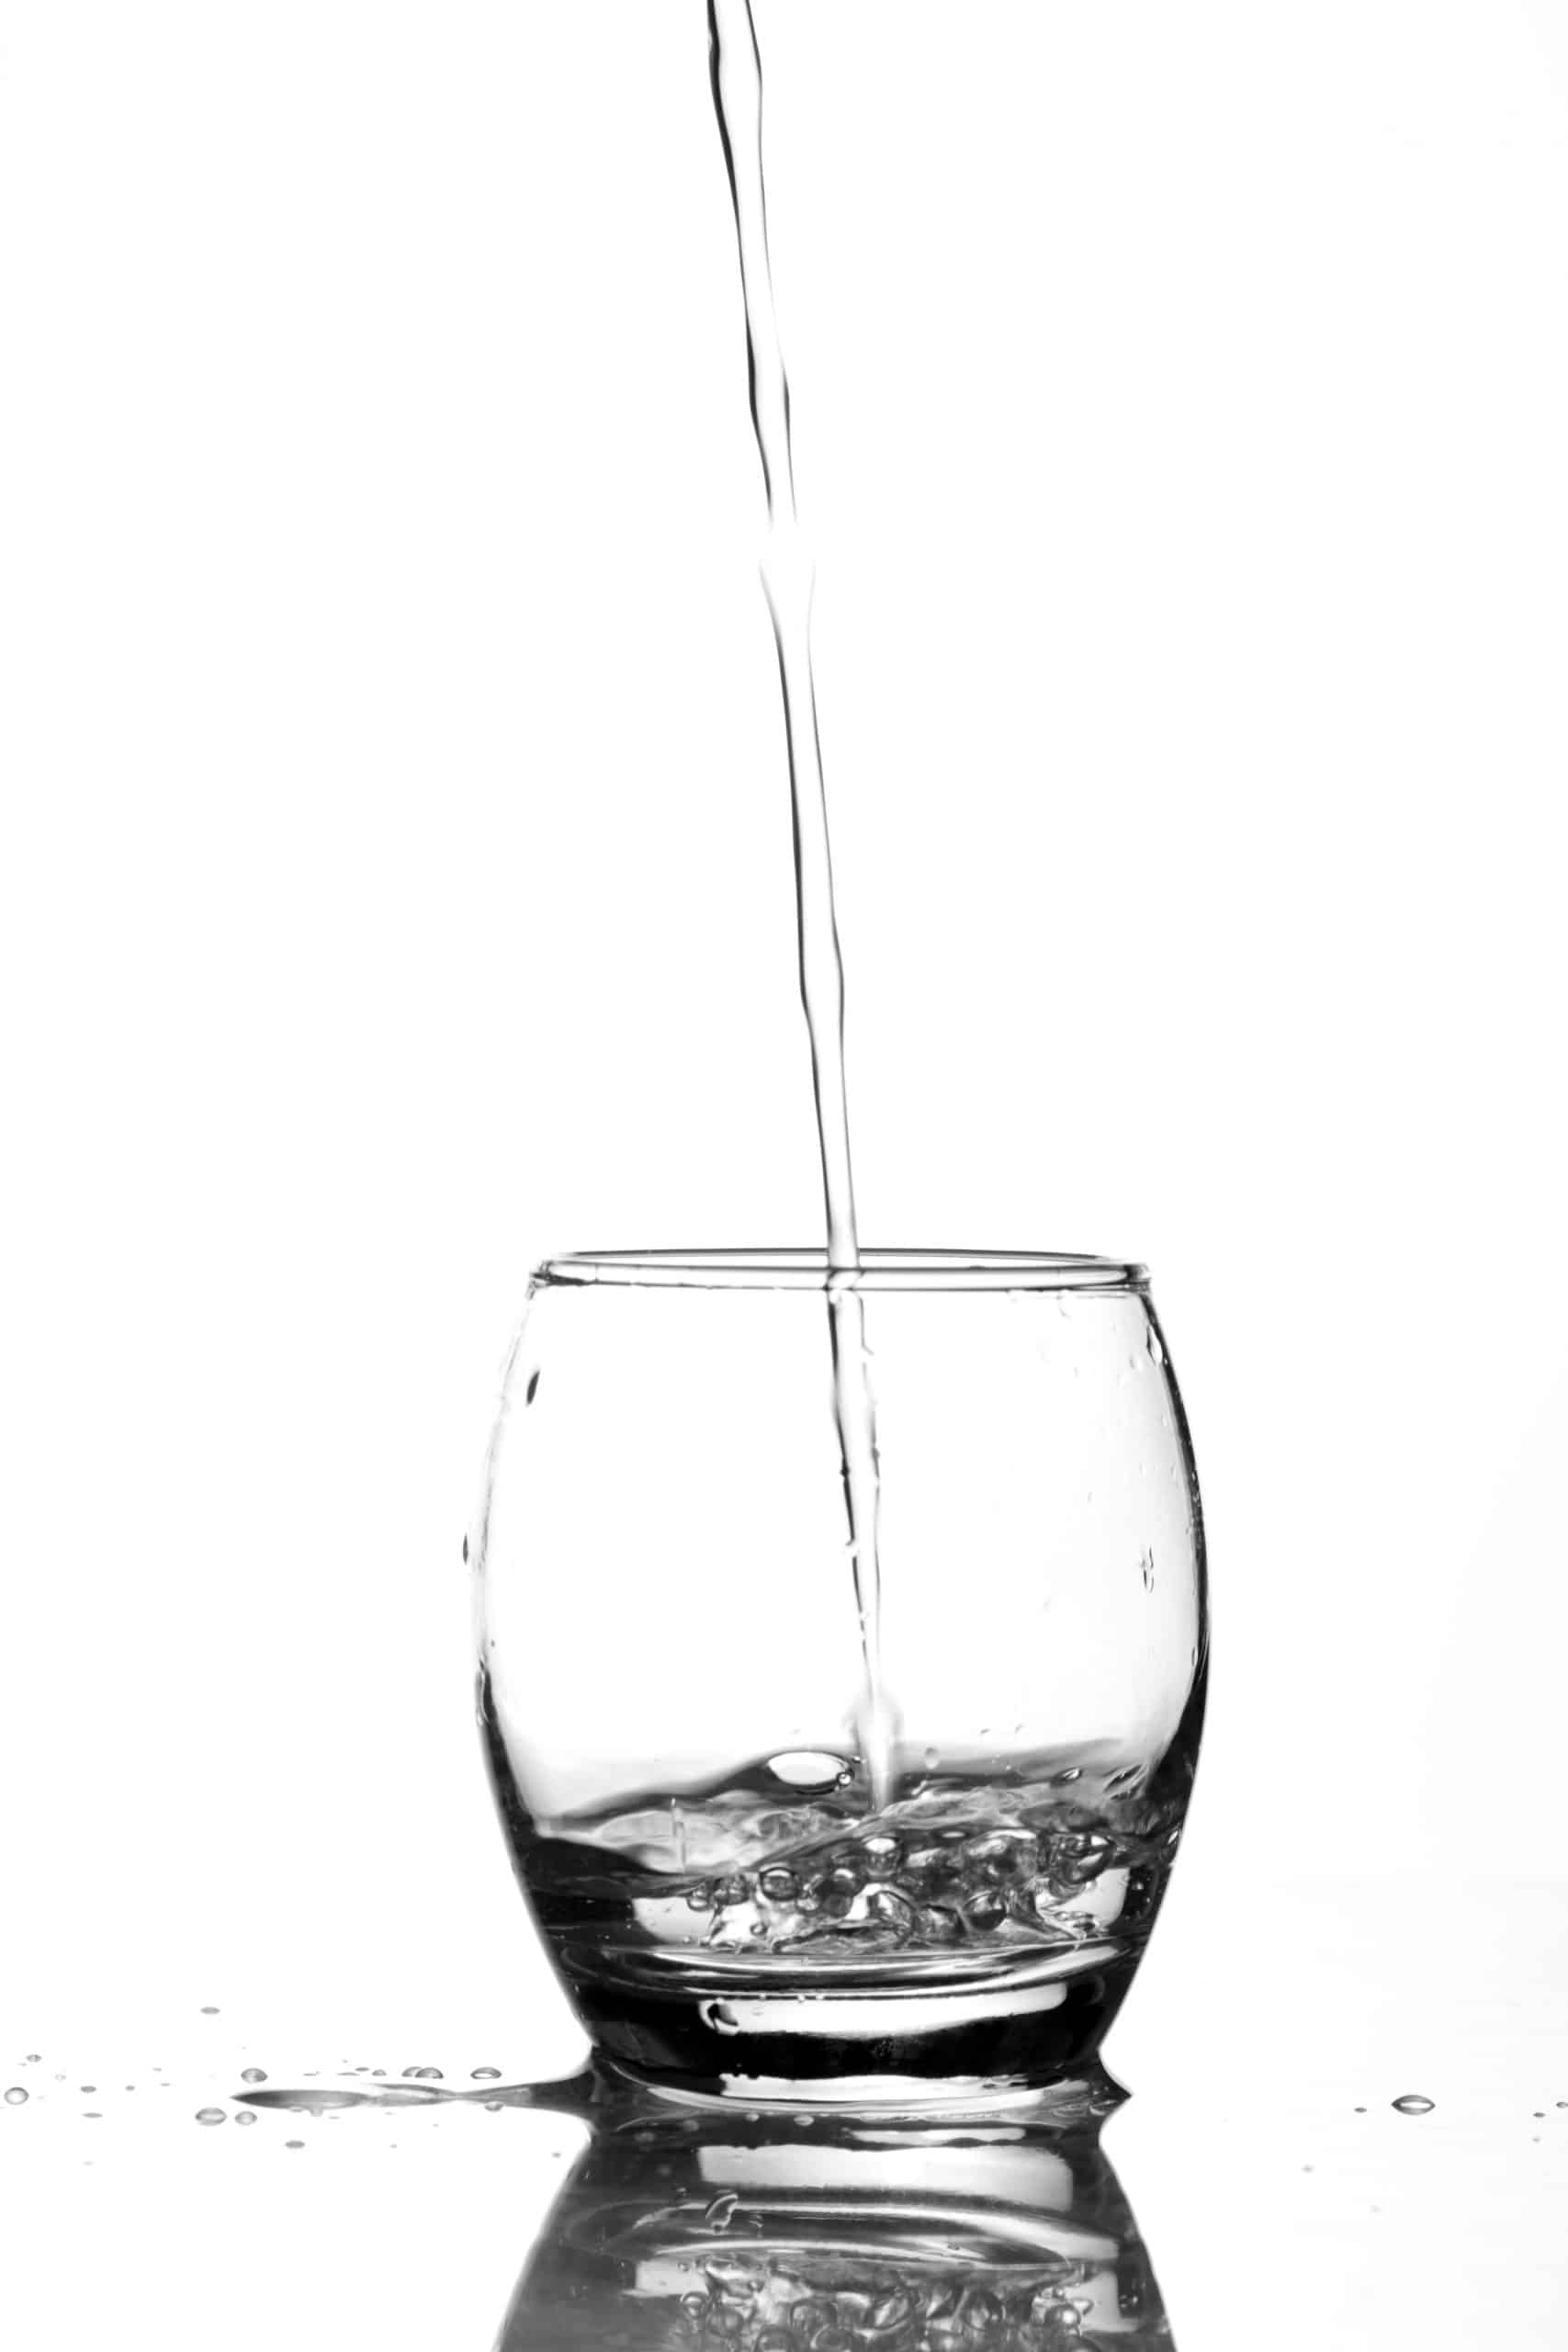 בר מים אלקטרה {75% מהישראלים שותים מברי מים} - המרכז לברי מים